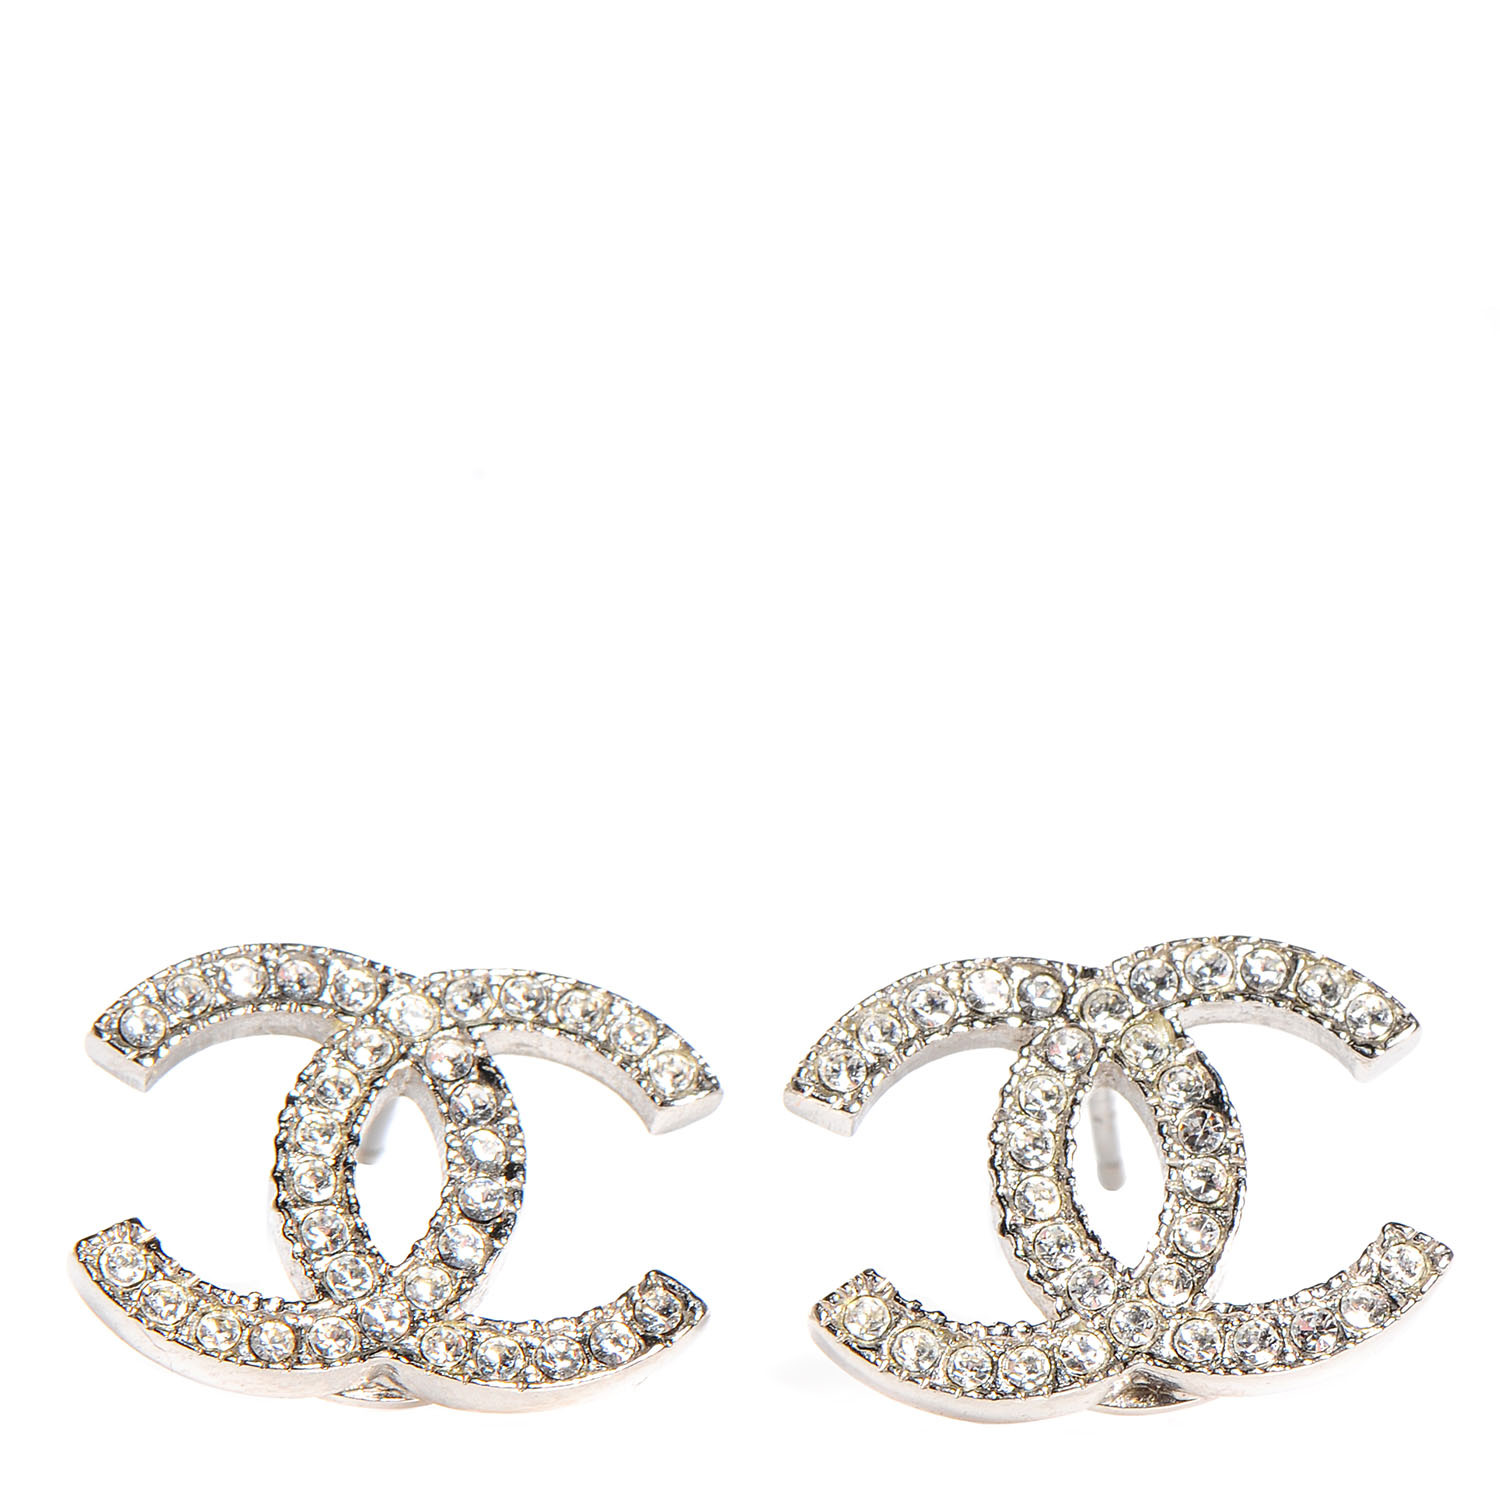 Chanel Earrings Cc
 CHANEL Crystal CC Earrings Silver